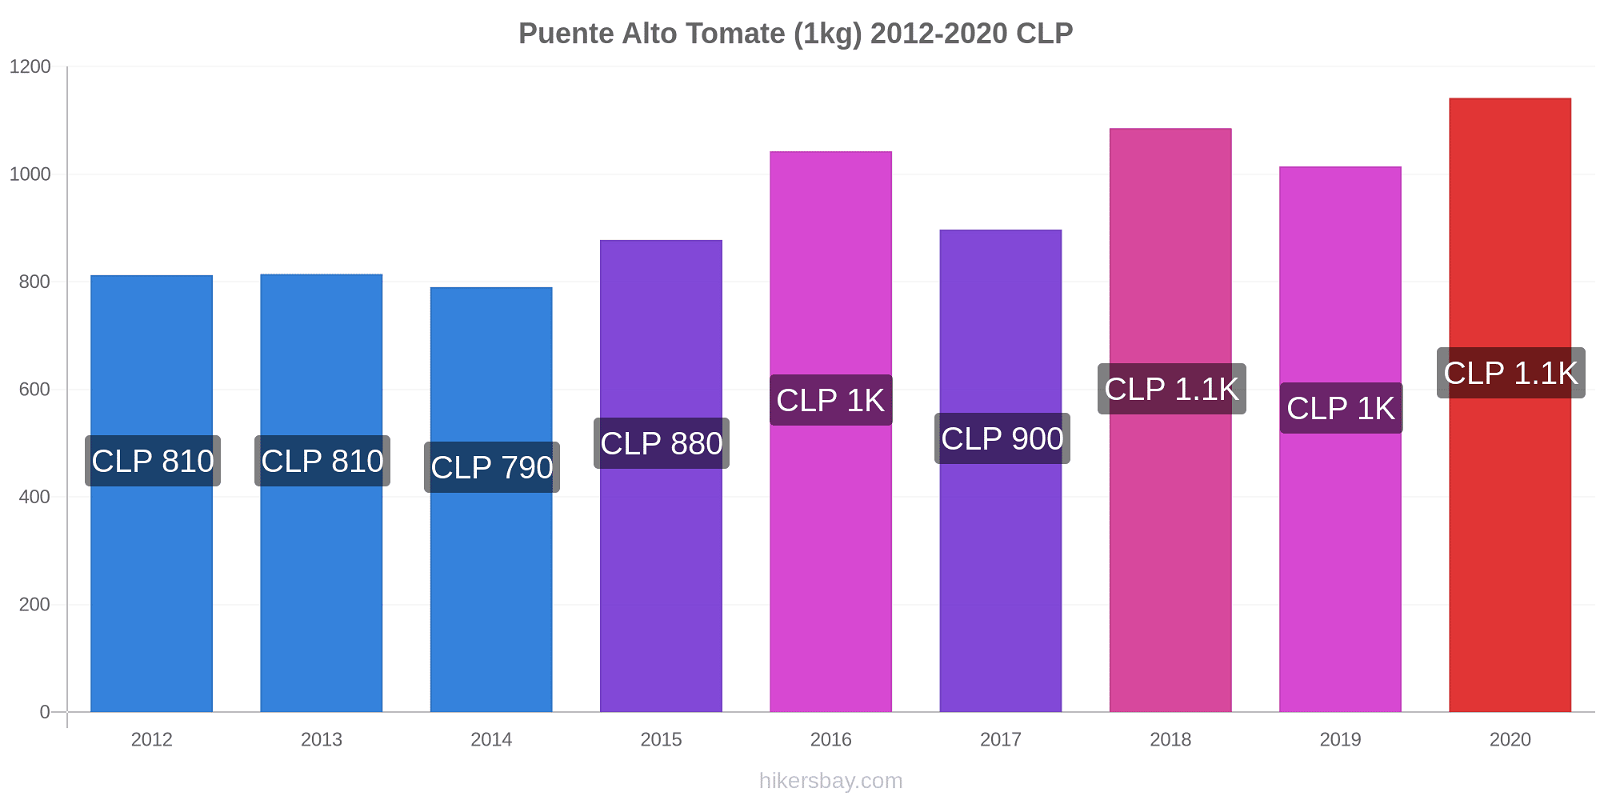 Puente Alto changements de prix Tomate (1kg) hikersbay.com